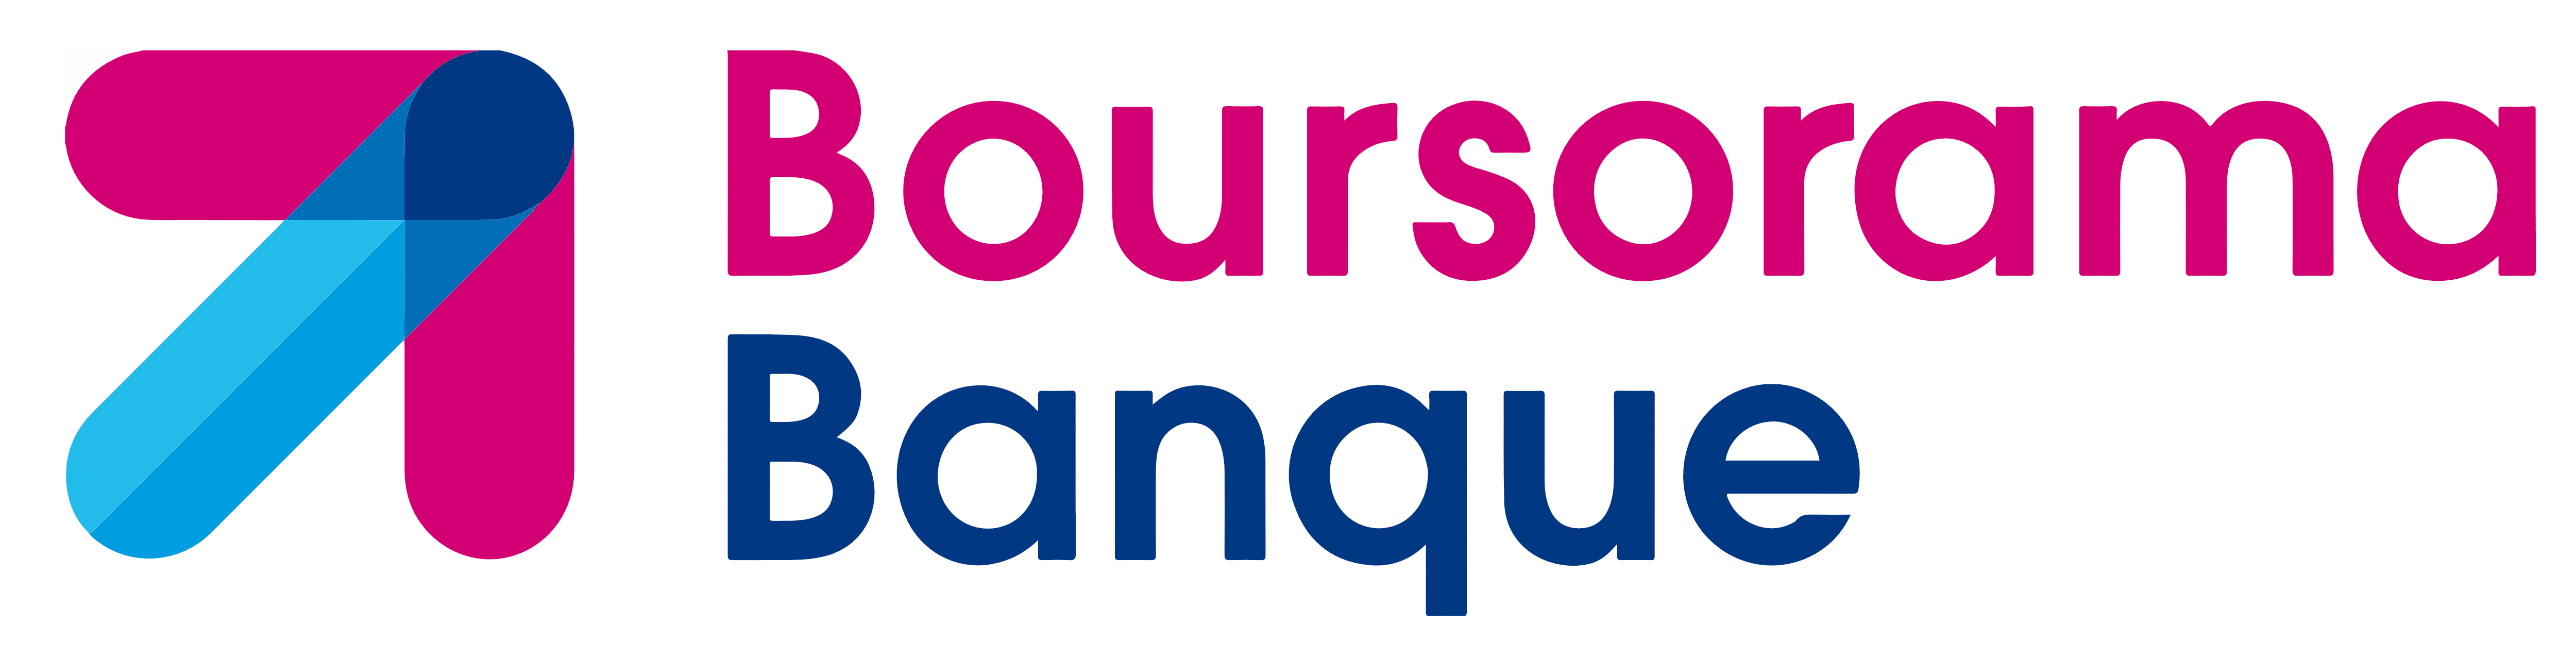 boursorama logo